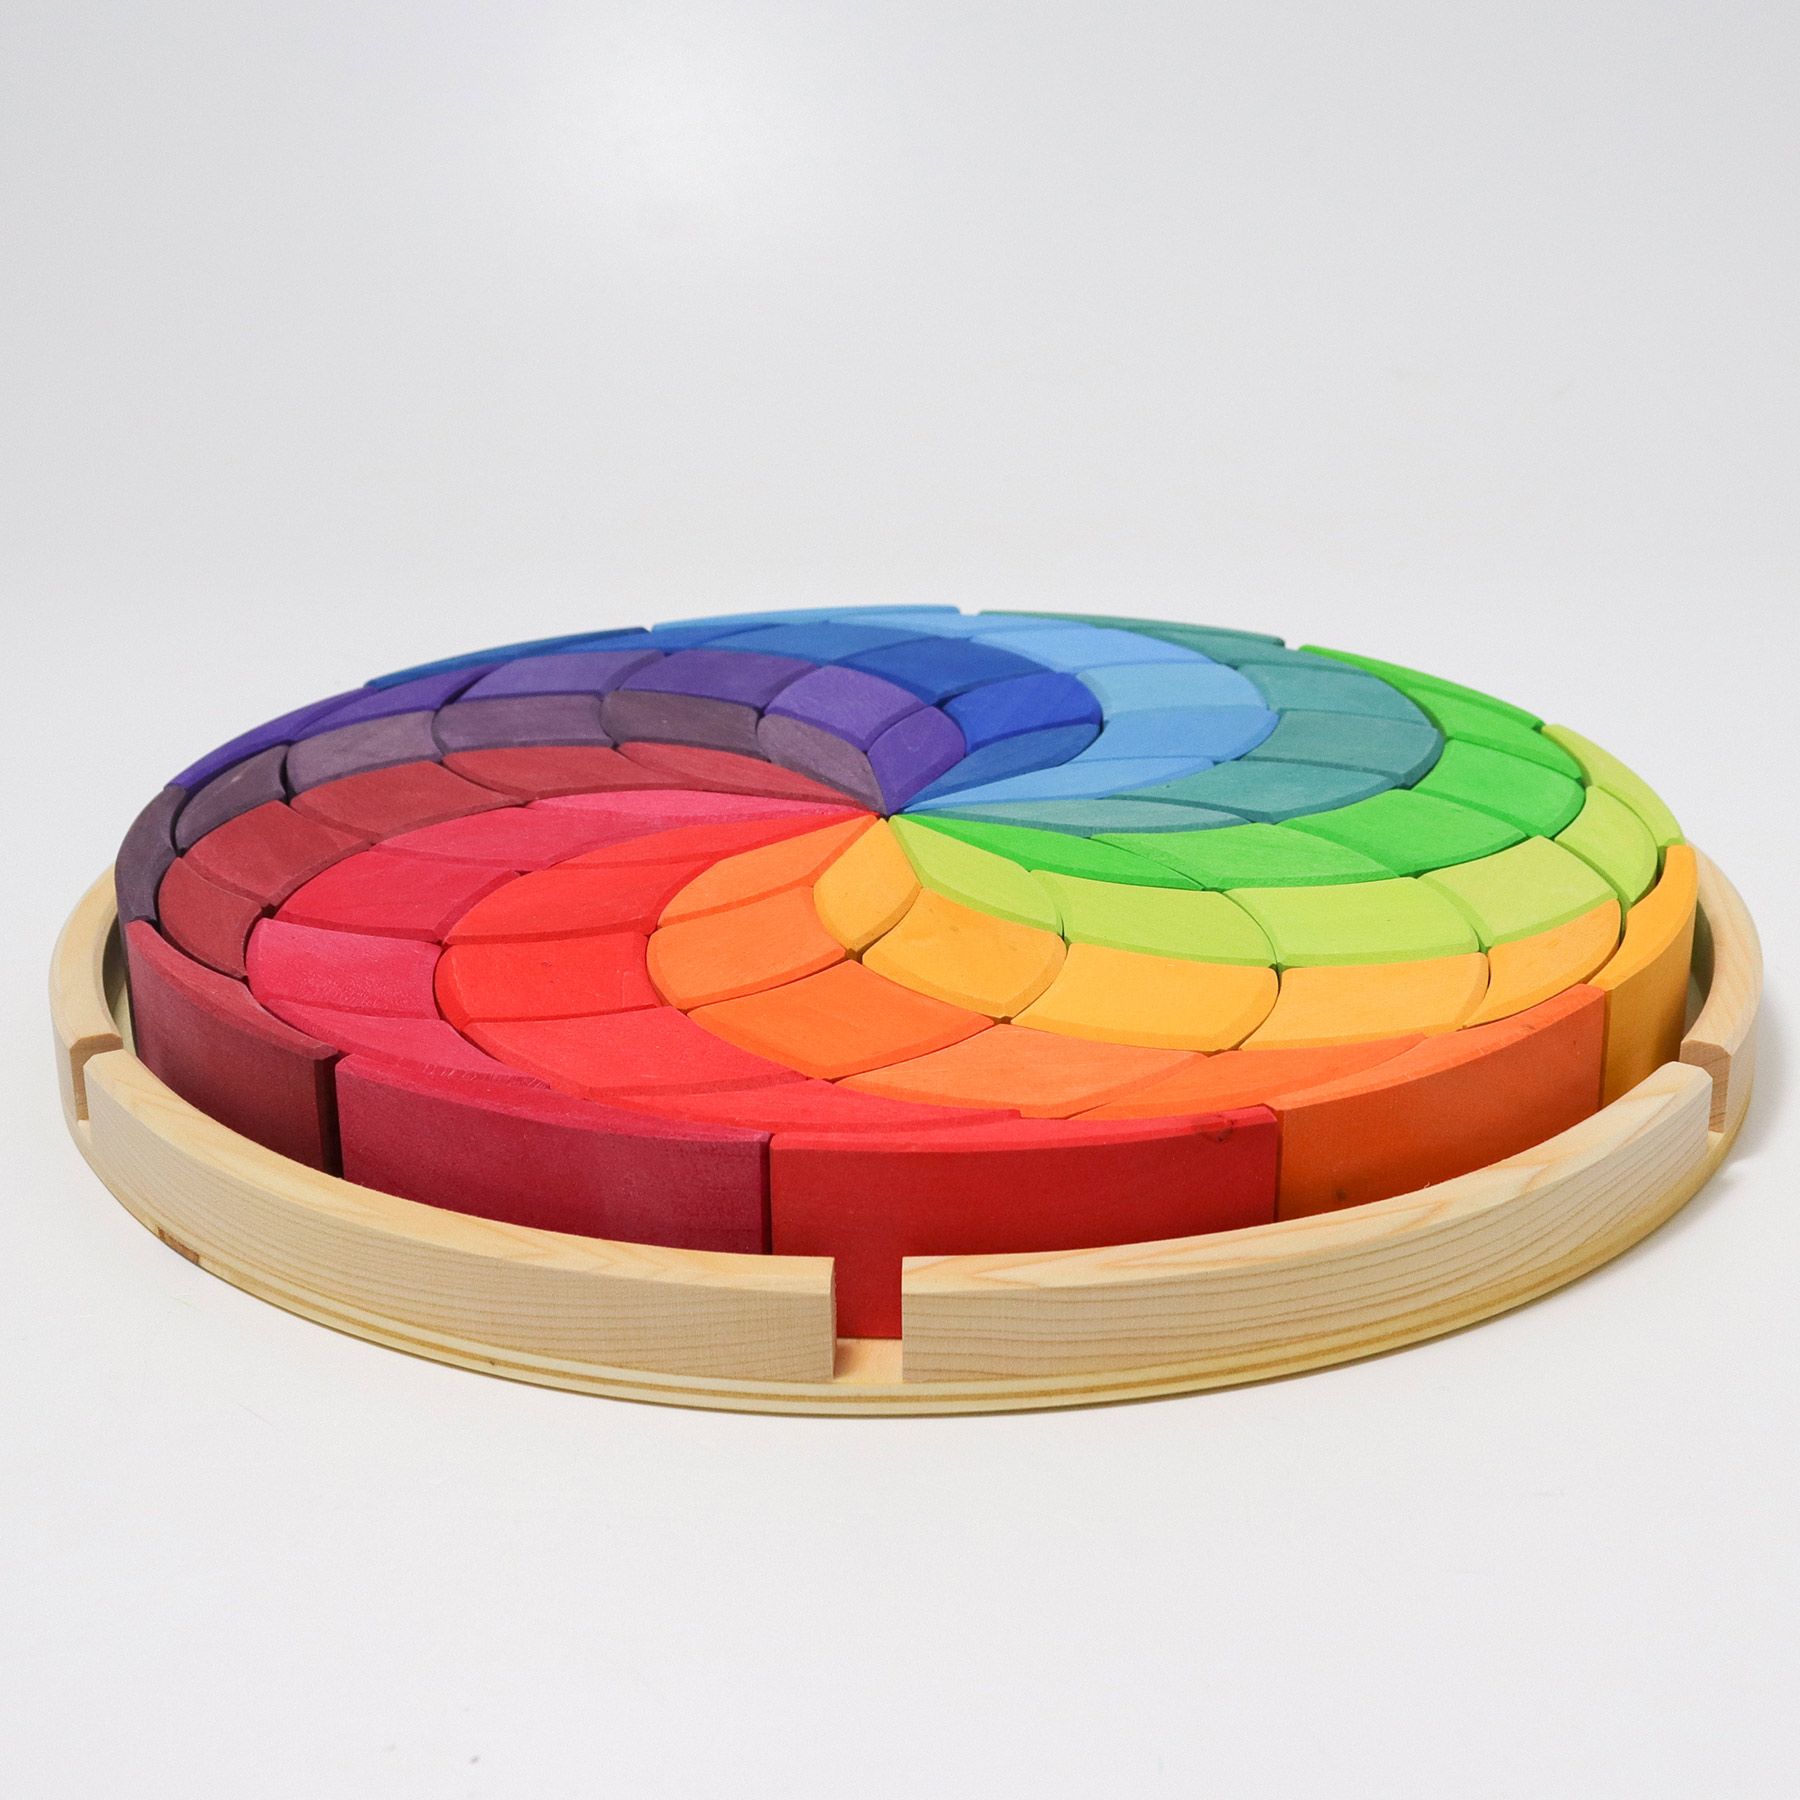 43270 - Grimms houten kleurenspiraal puzzel